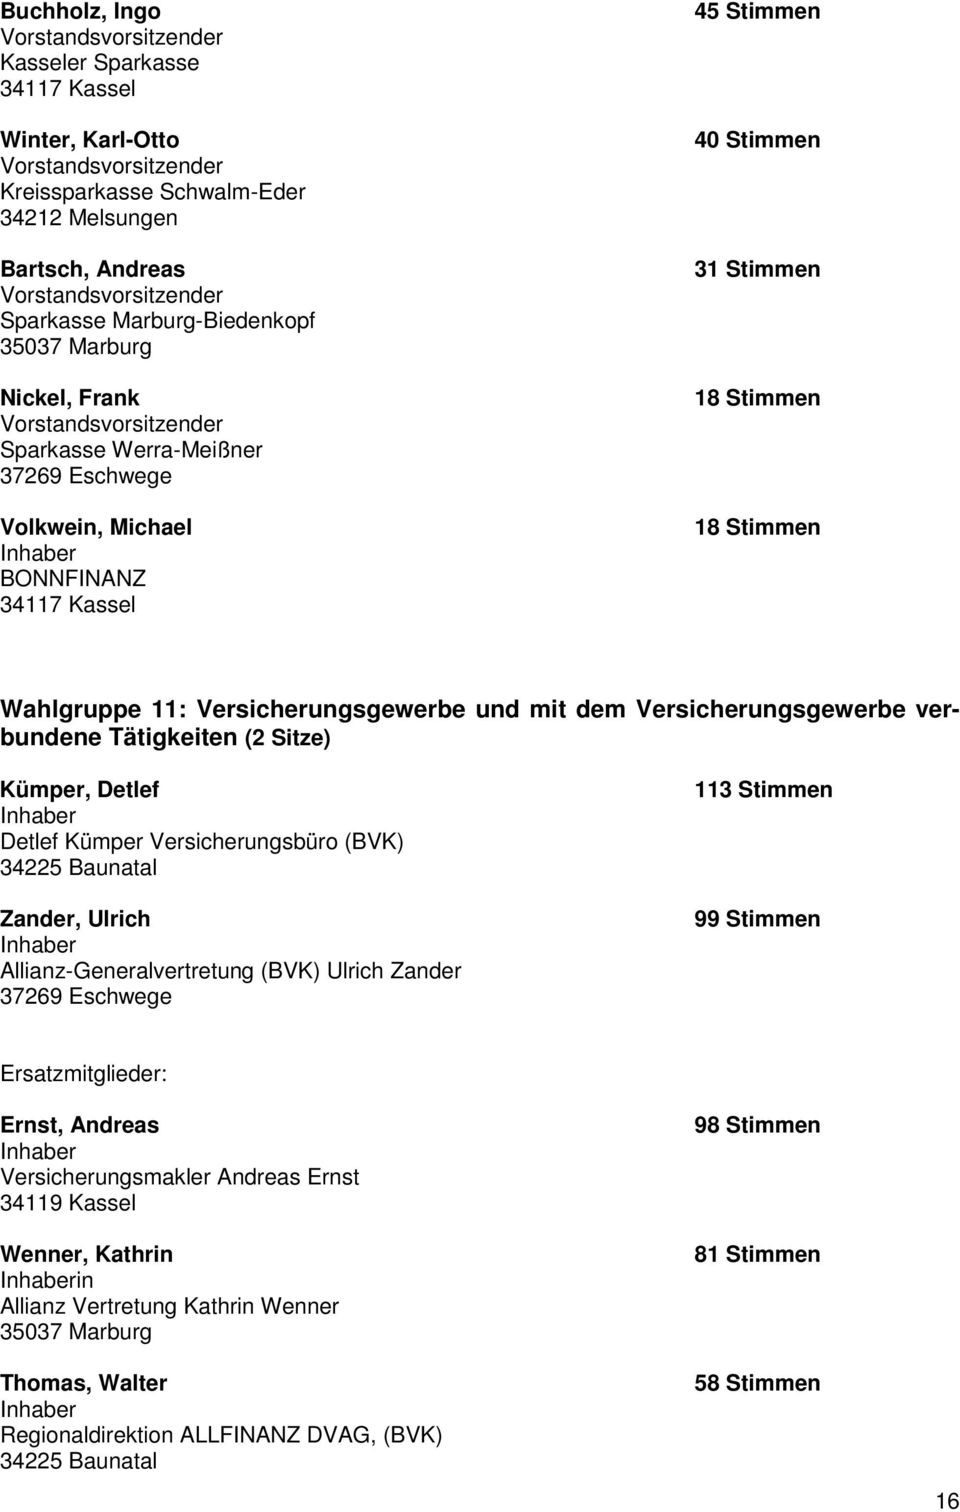 Wahlgruppe 11: Versicherungsgewerbe und mit dem Versicherungsgewerbe verbundene Tätigkeiten (2 Sitze) Kümper, Detlef Detlef Kümper Versicherungsbüro (BVK) 34225 Baunatal Zander, Ulrich